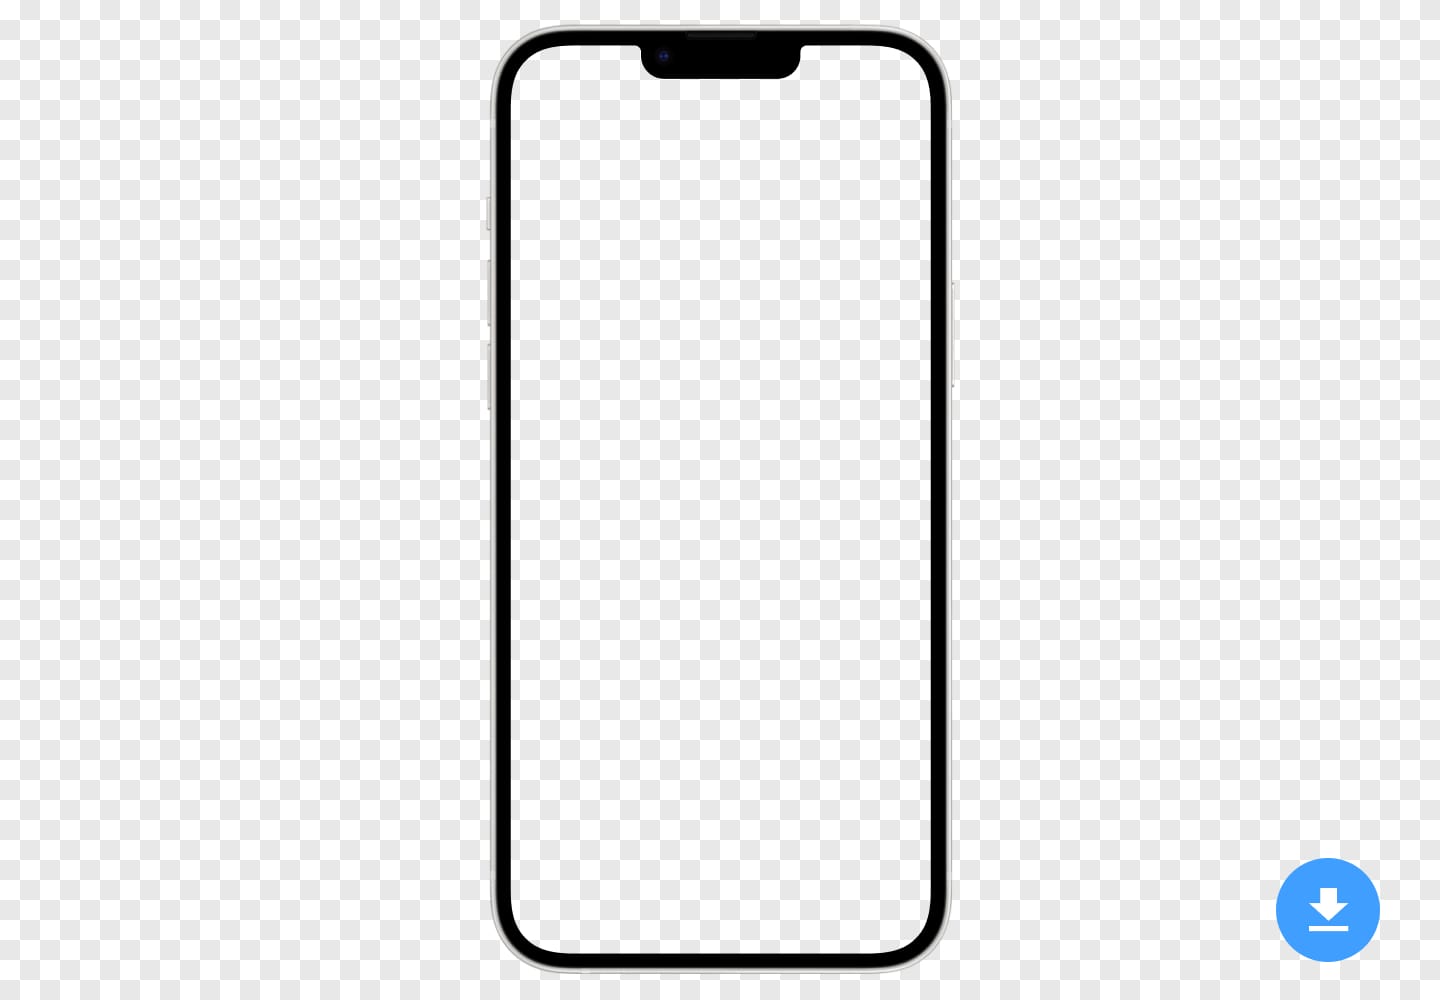 Maqueta HD gratuita de Apple iPhone 14 MAX (2022) en formato de imagen PNG y PSD con fondo transparente